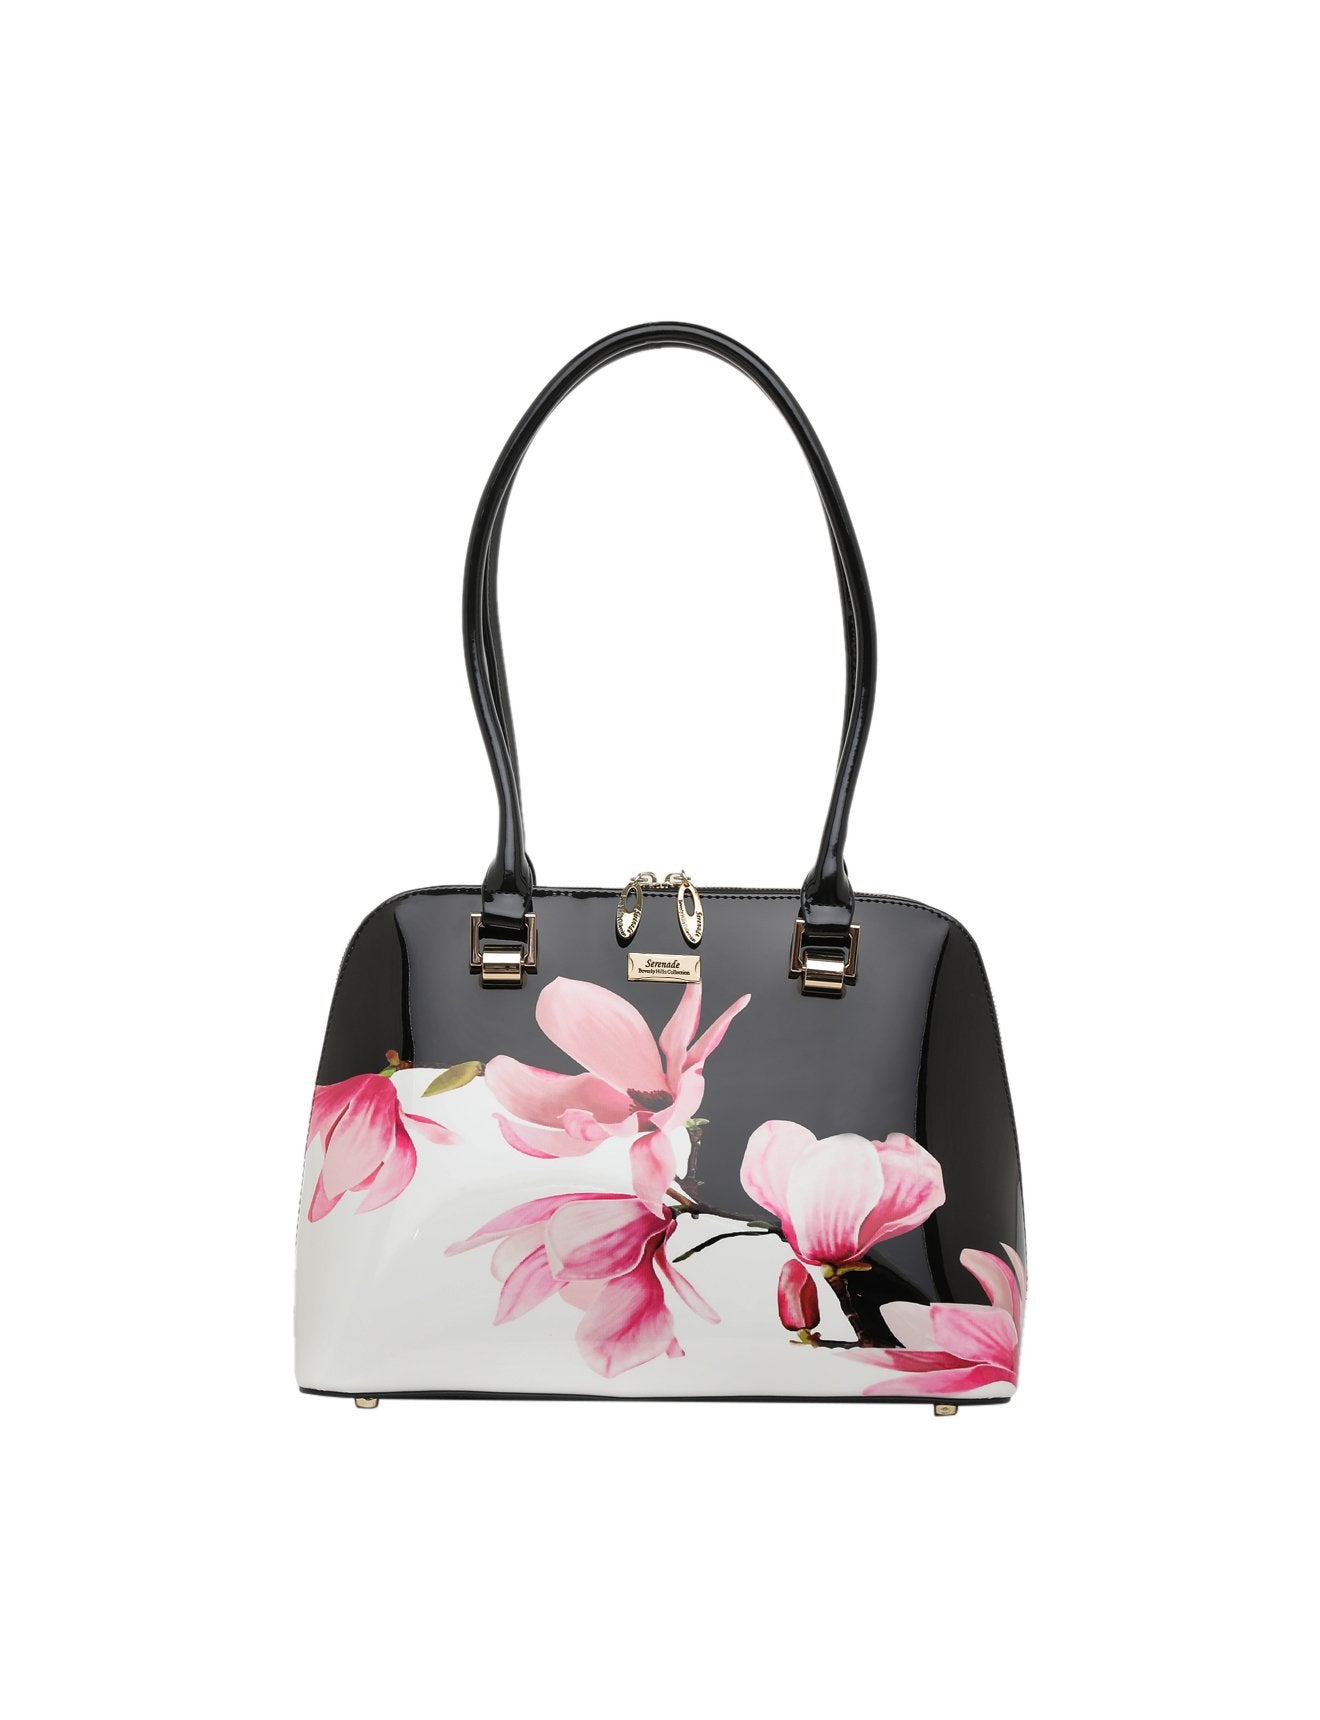 Serenade - Magnolia SN21-0758 Leather Handbag - Floral